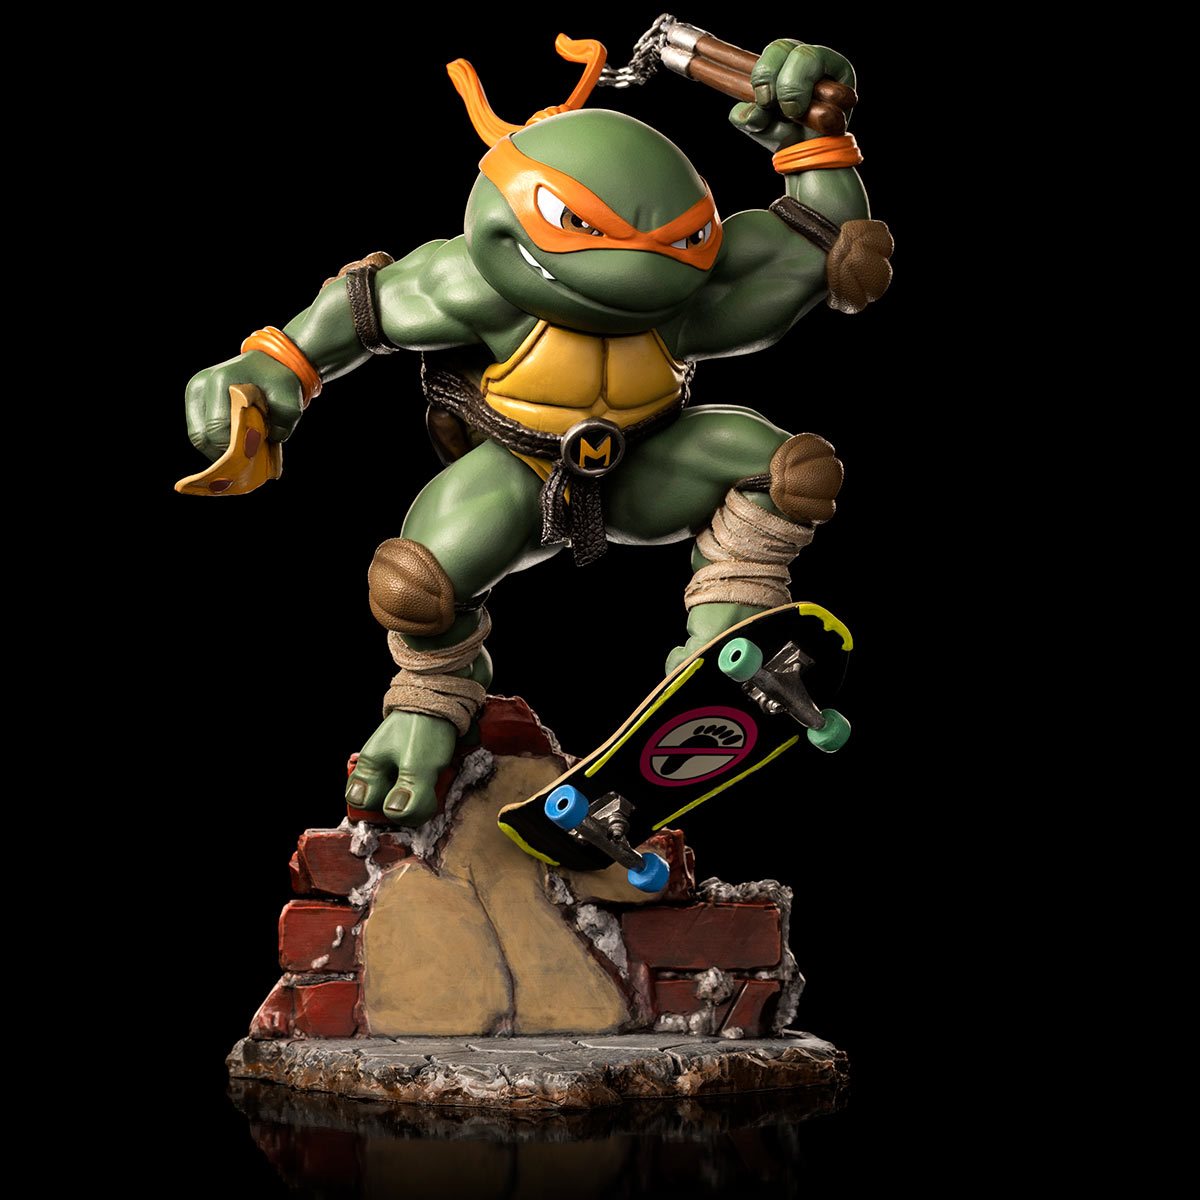 MiniCo. Vinyl Figure: Teenage Mutant Ninja Turtles - Michelangelo